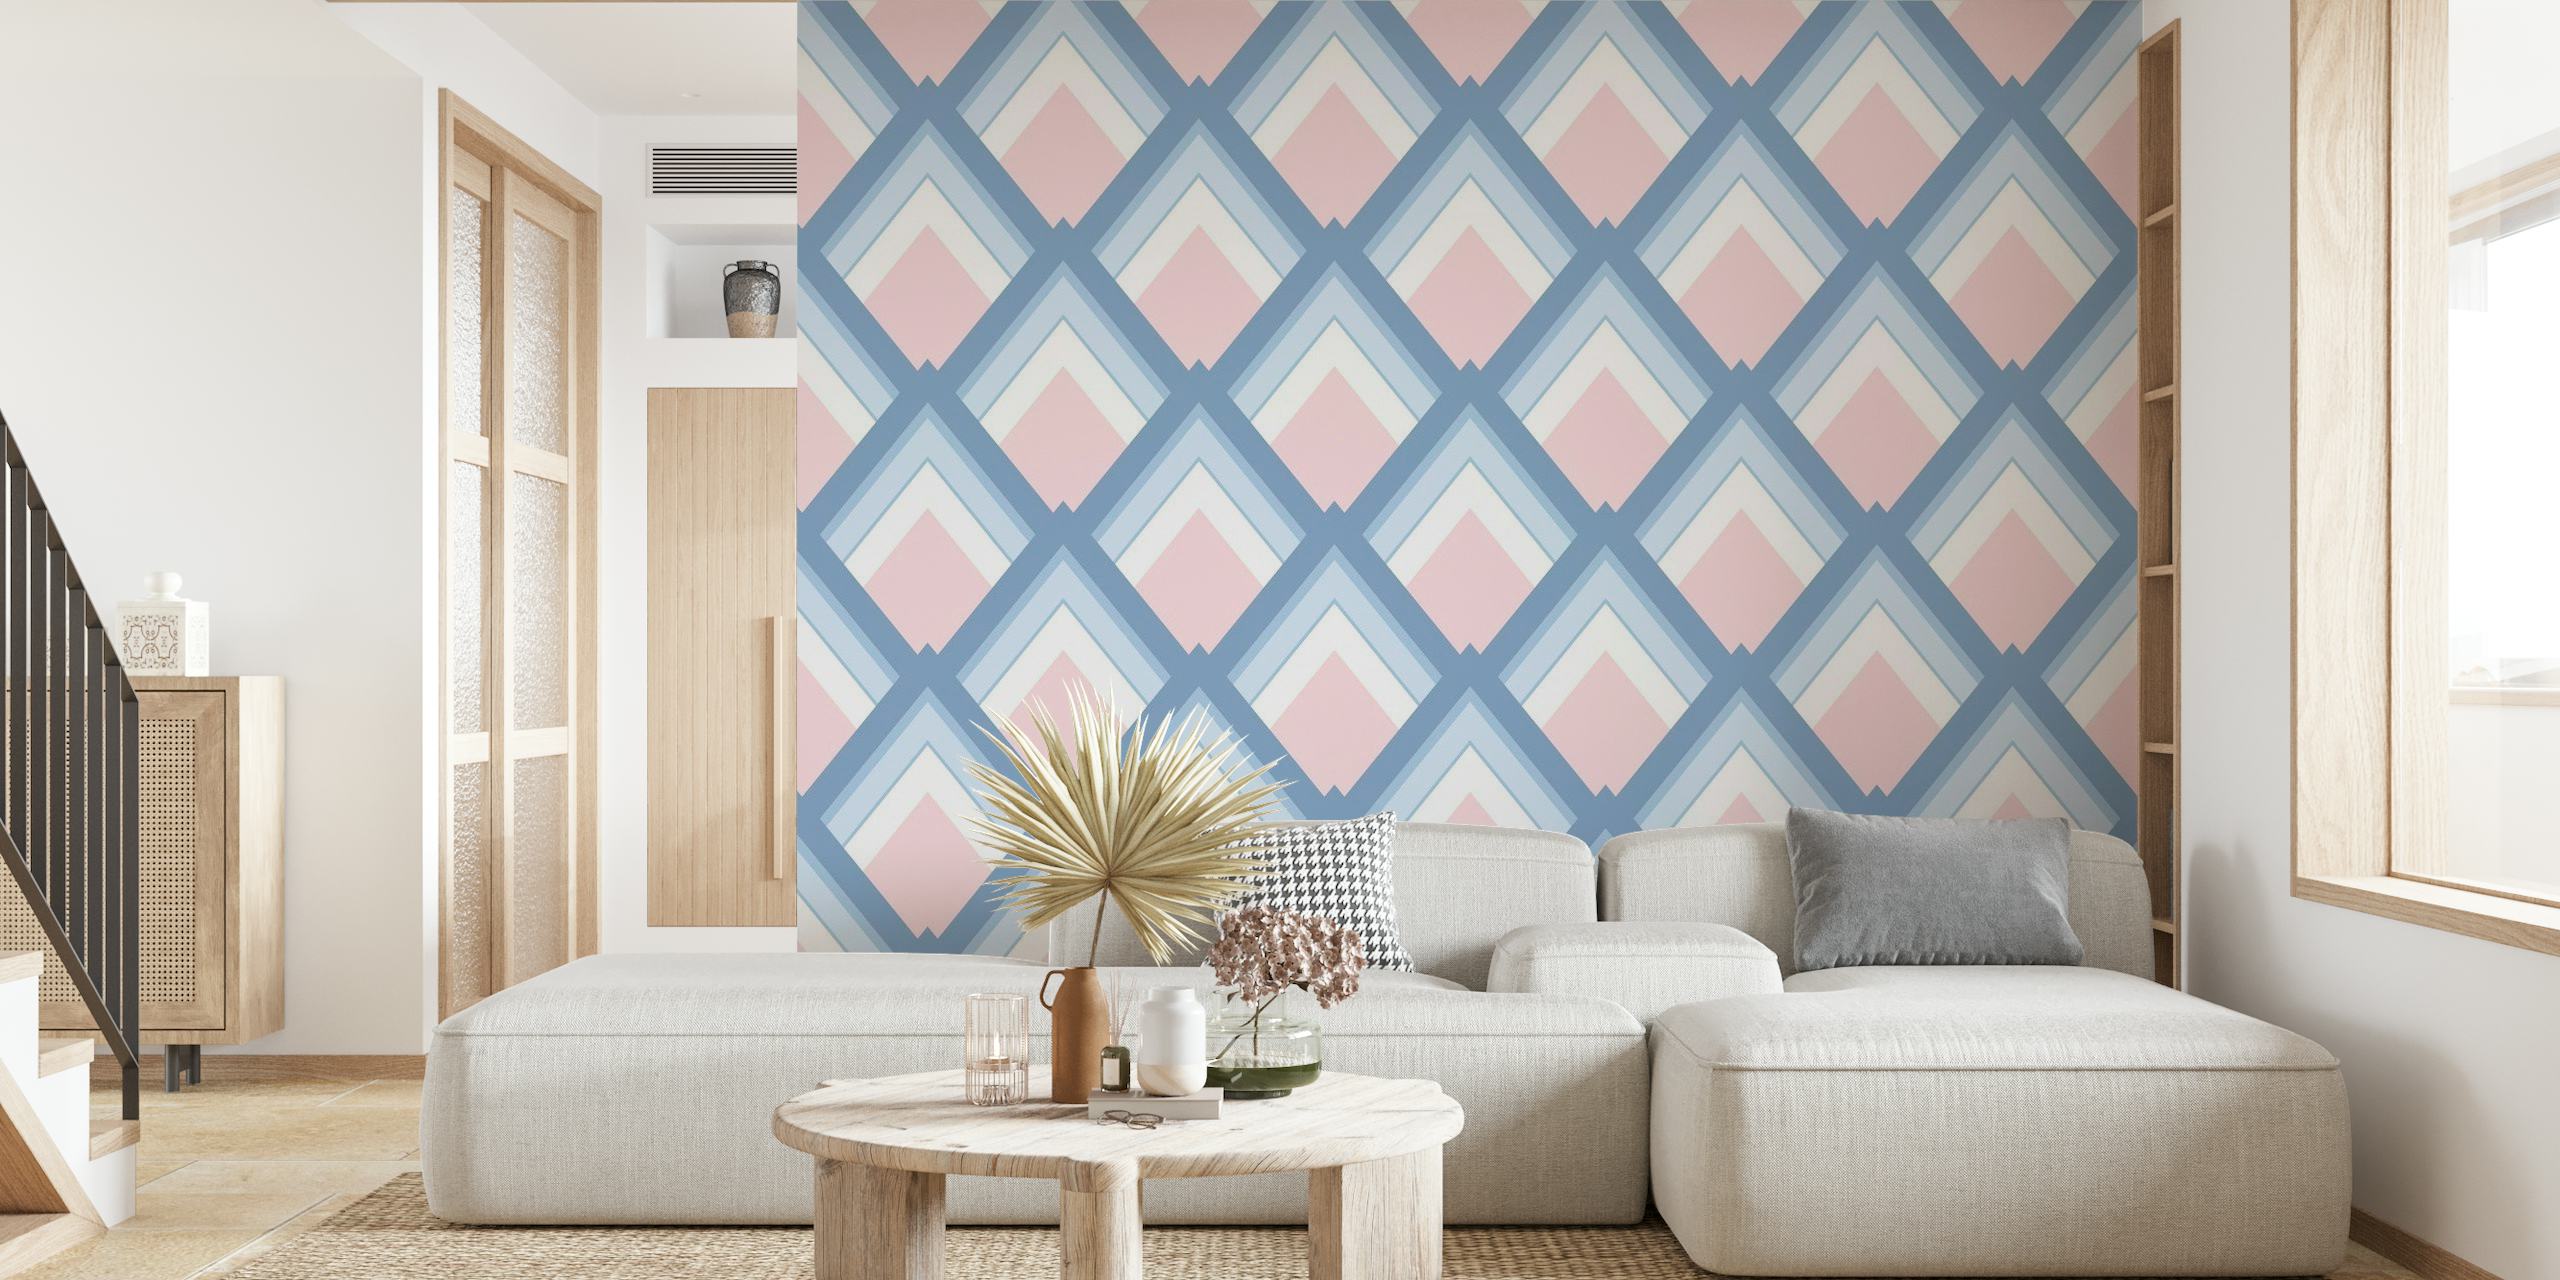 Abstrakt geometrisk 6 vægmaleri med pink og blå mønstre